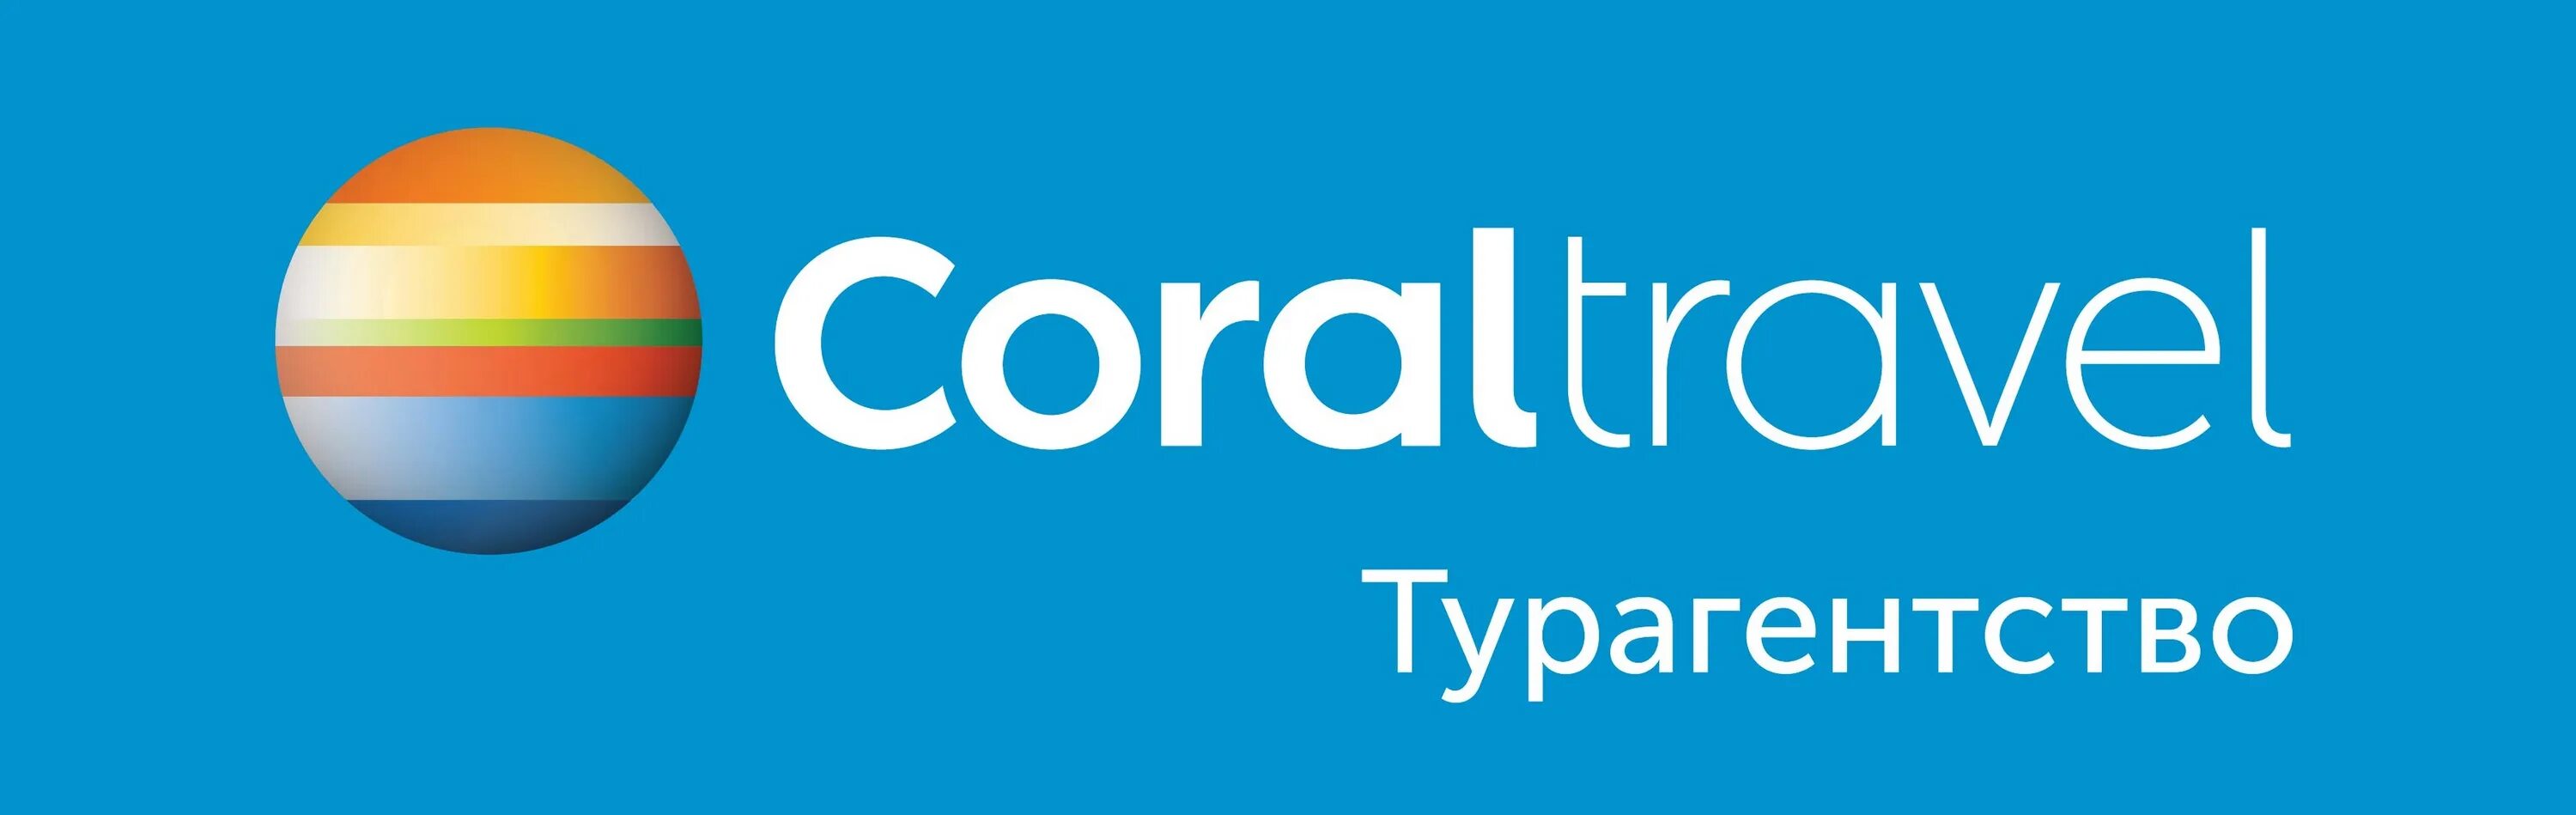 1 coral travel. Coral Travel логотип. Корал Тревел туроператор. Турфирма Coral Travel. Coral Travel турагентство логотип.